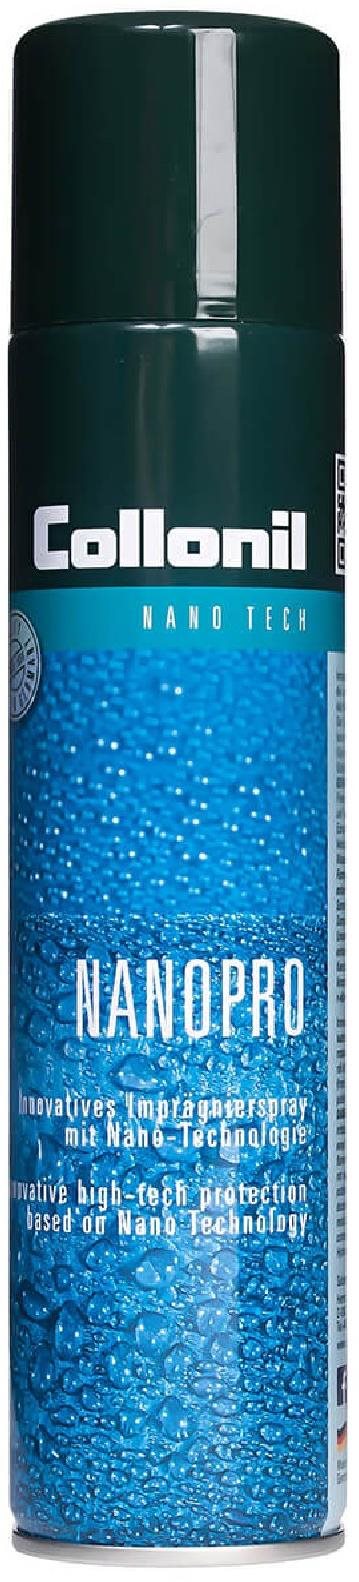 Impregnáló Collonil Nano Pro 300 ml